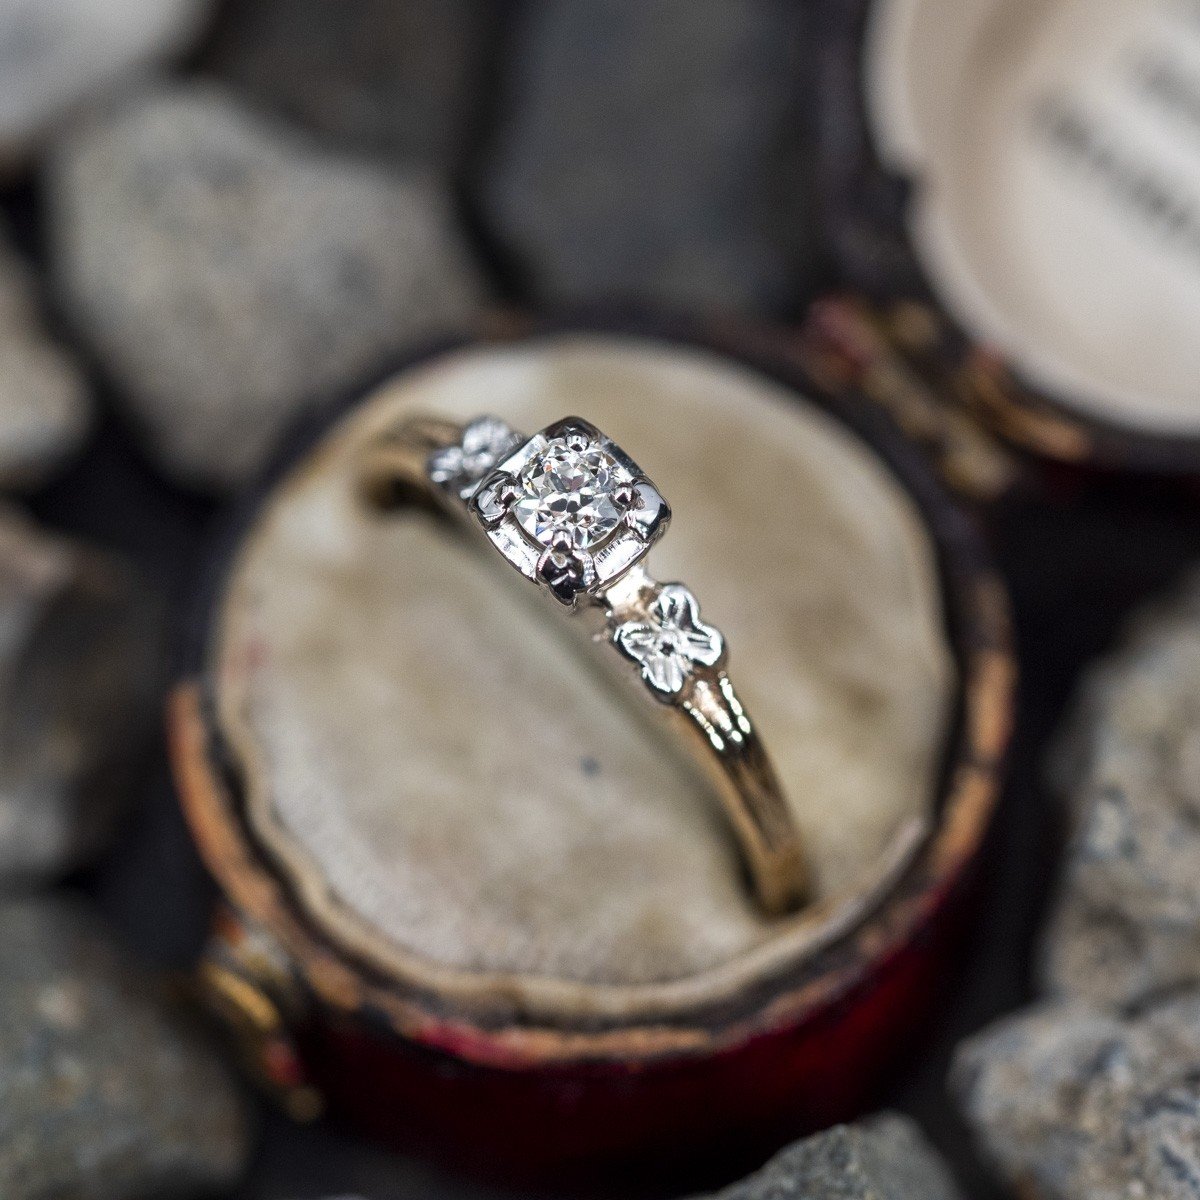 1940s vintage engagement ring | Vintage engagement rings unique, Simple  engagement rings, Wedding rings vintage